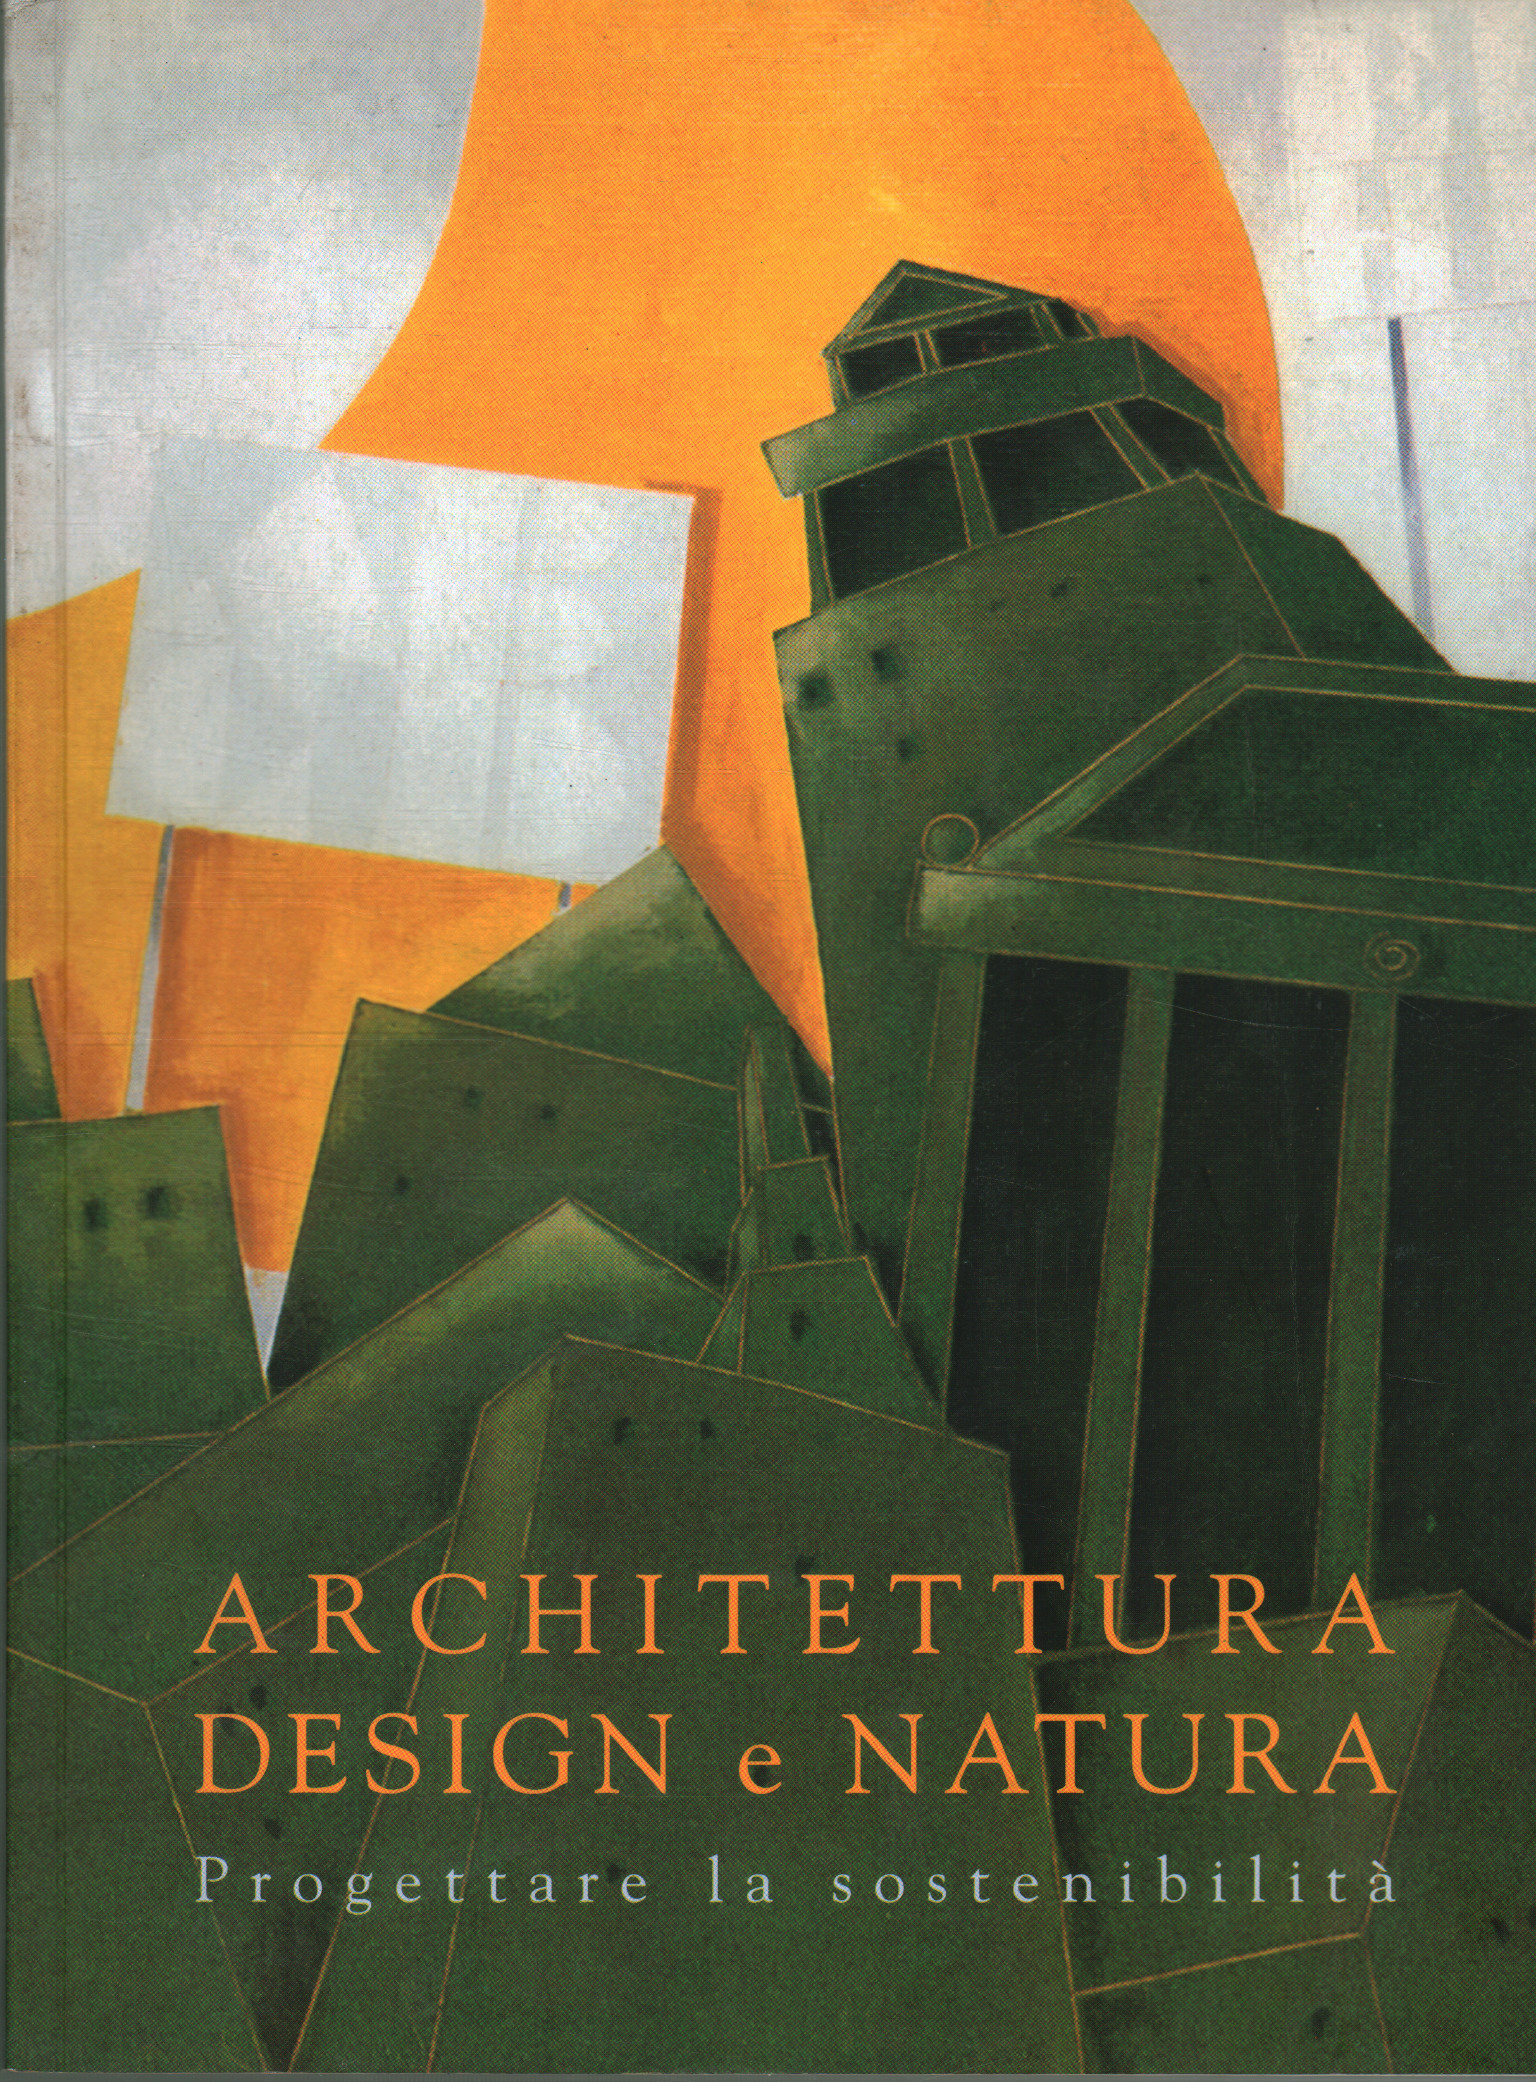 Diseño de arquitectura y naturaleza, Serena Omodeo Salè